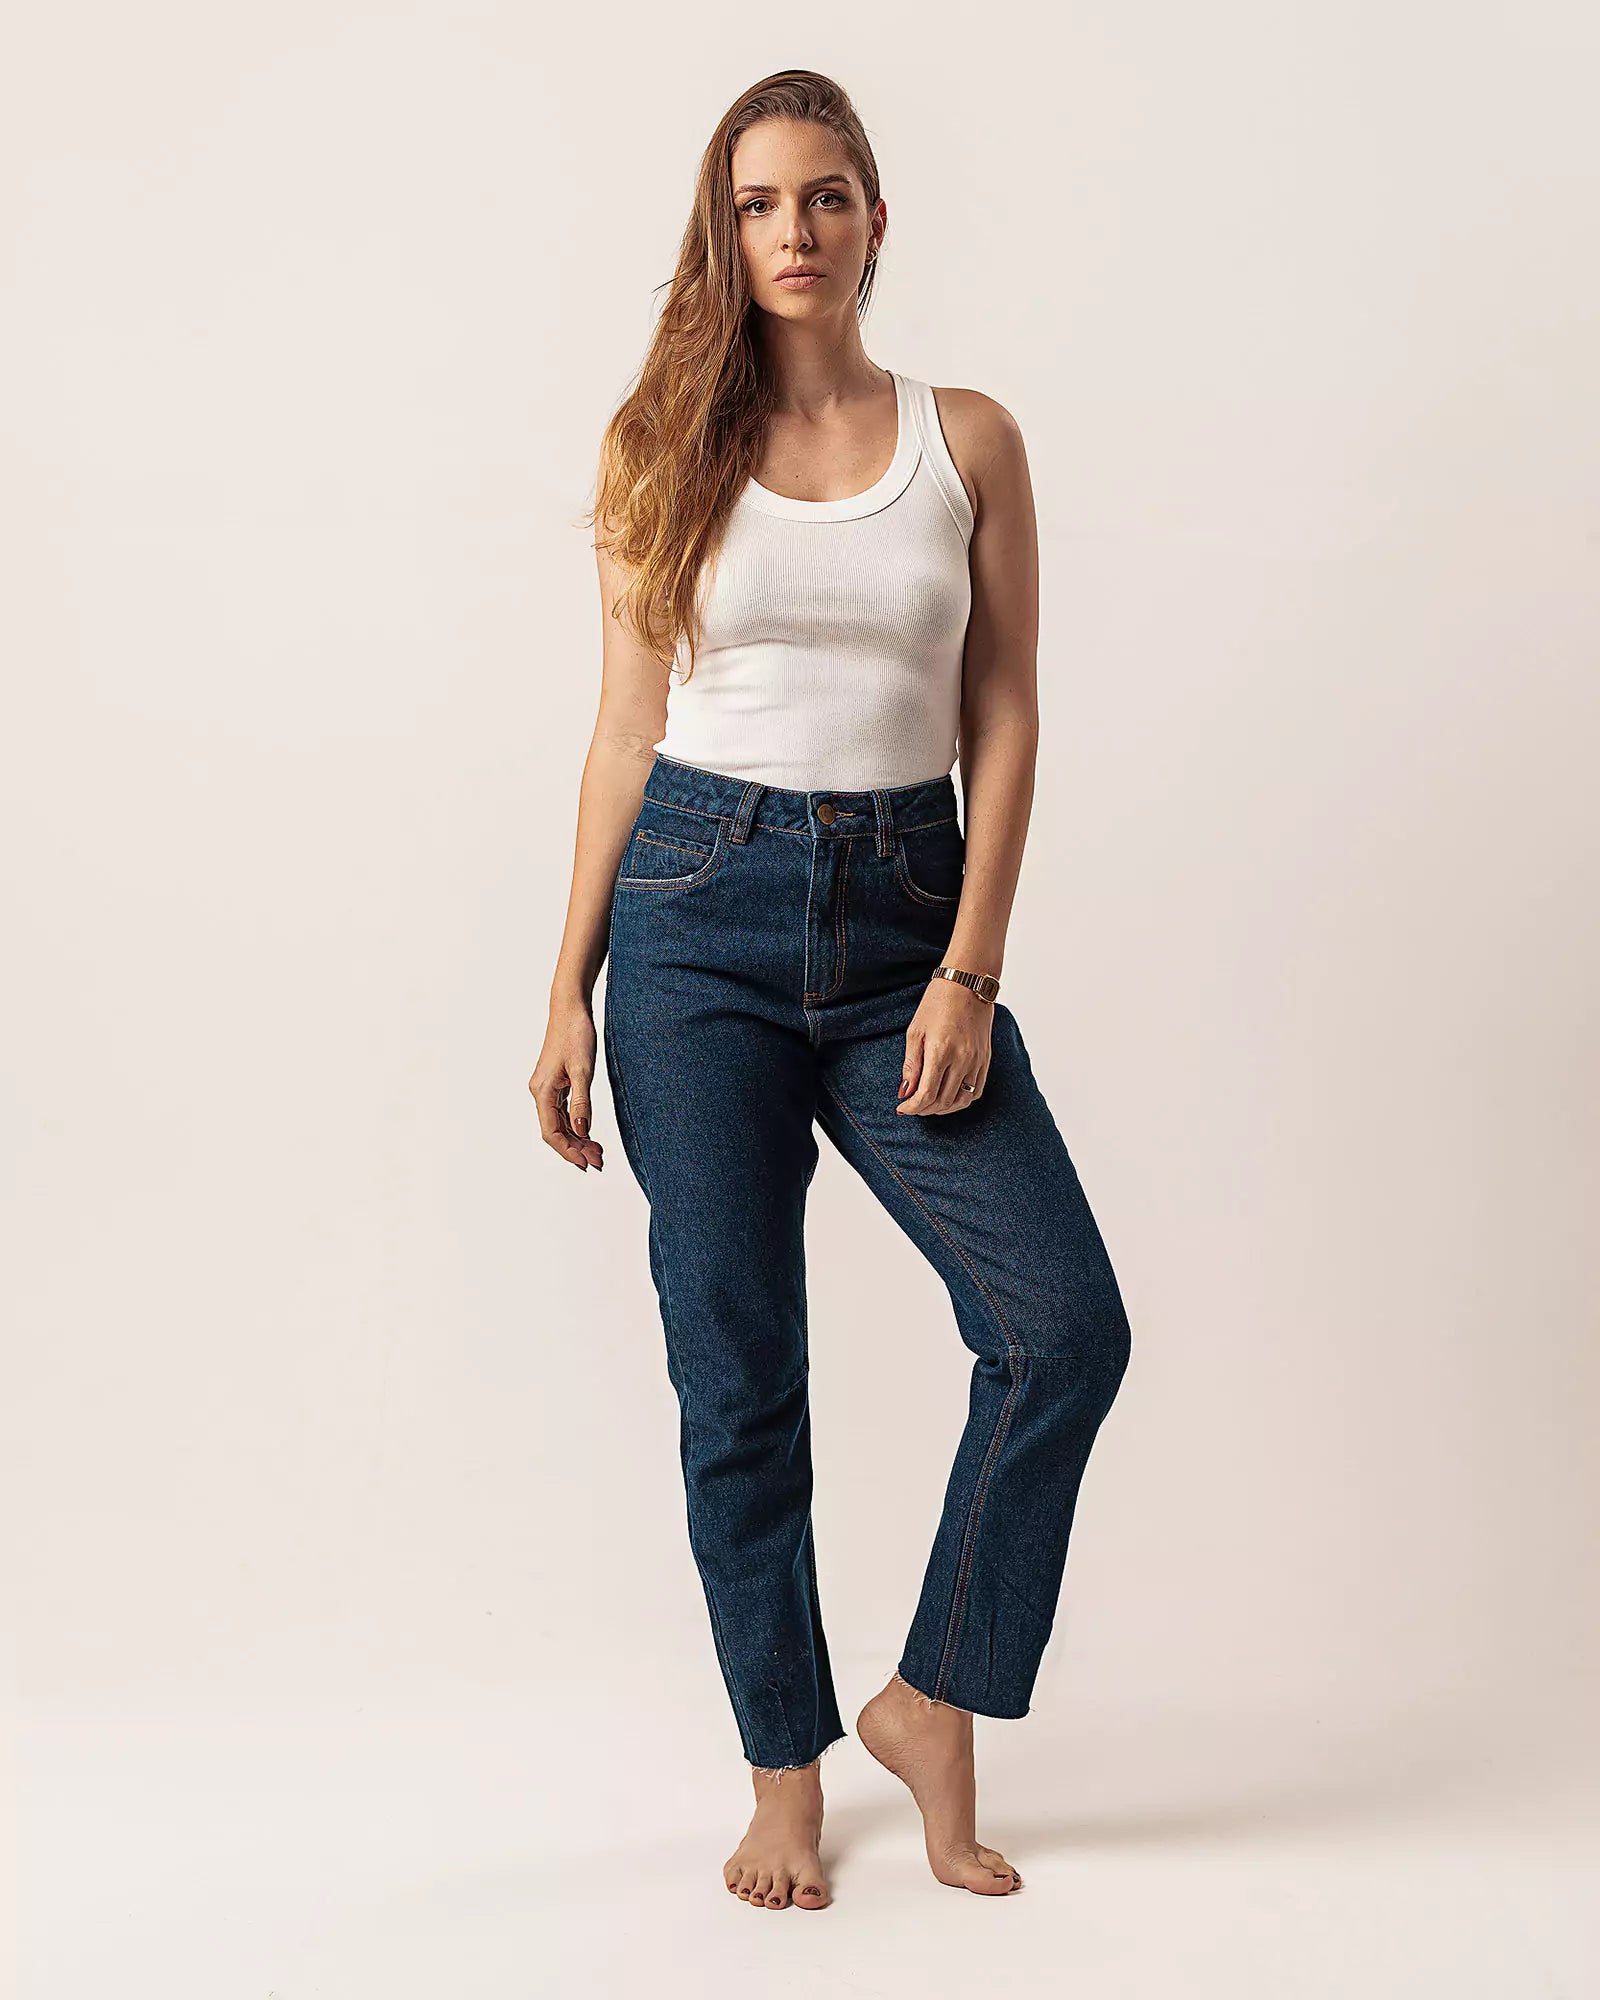 Calça Mom Jeans Barra Fio Azul Escuro Eco Denim™. Compre online moda sustentável e atemporal na Minimadeia. Roupas femininas estilosas, básicas e sustentáveis. Foto produto 04